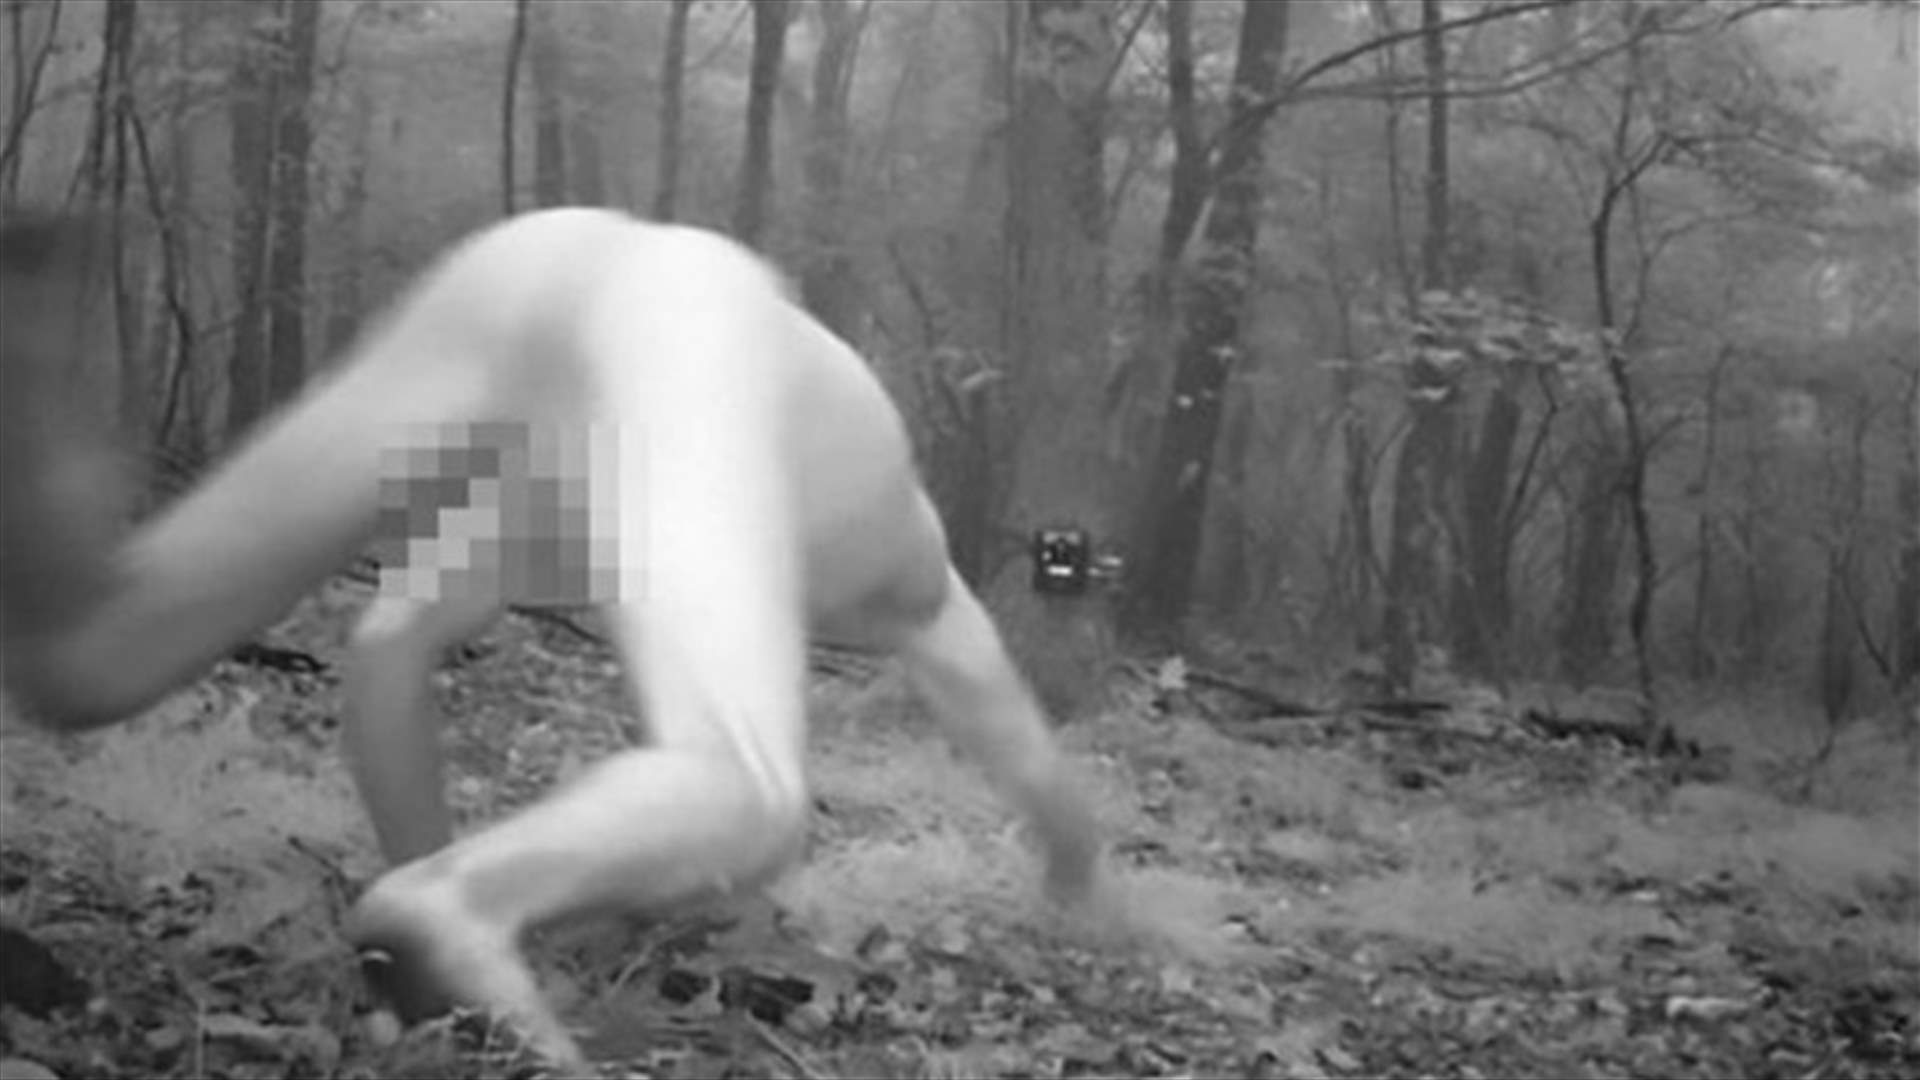 بالفيديو: كاميرا مراقبة رصدت تصرّفاتٍ غريبة لرجلٍ في منتصف الليل... ماذا فعل؟